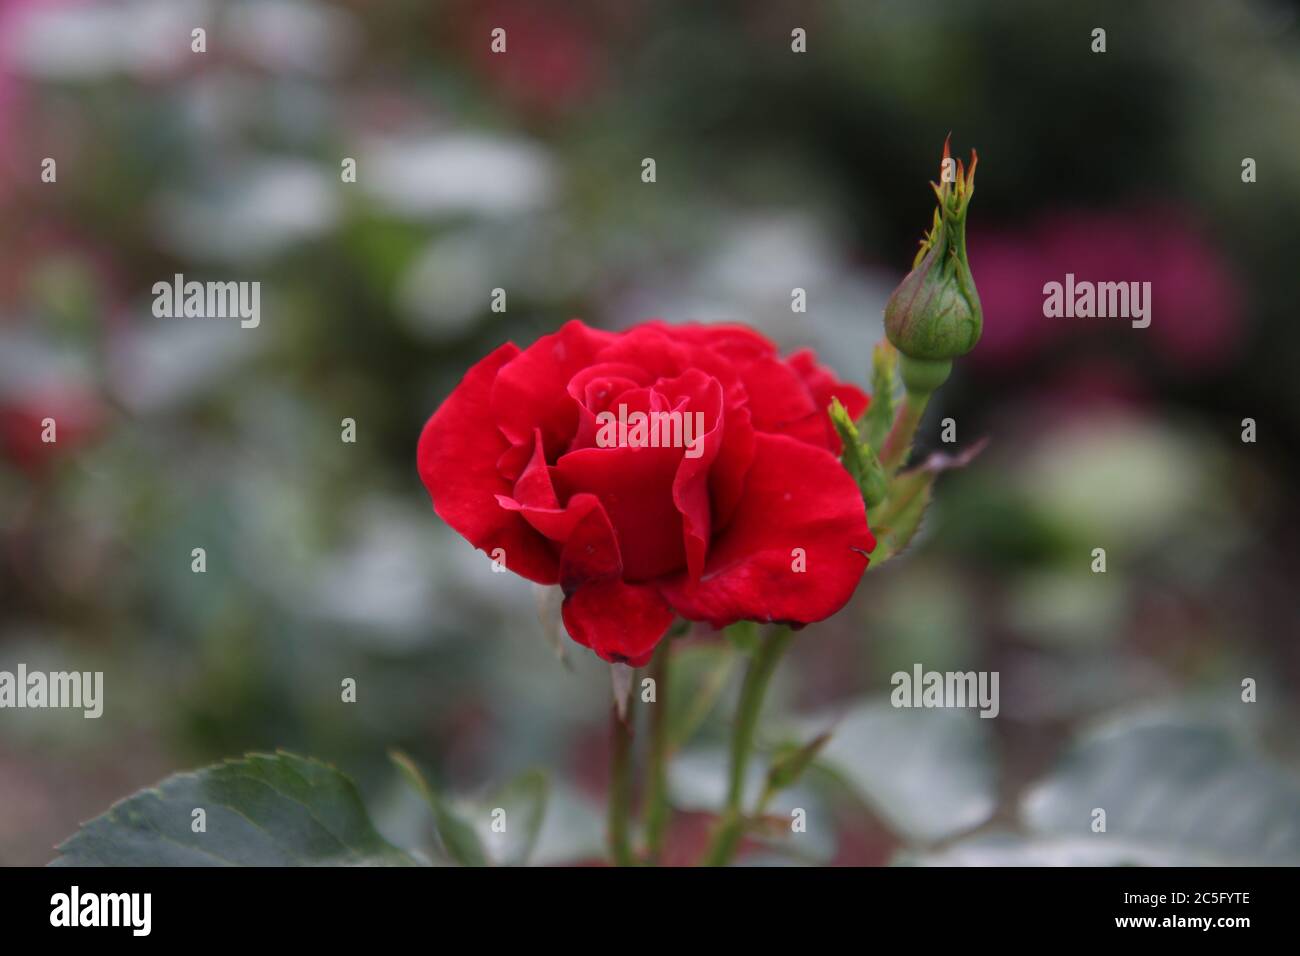 Leuchtend rote Rosenblütenkopf, umgeben von leicht verwischten roten Rosenknospen. Das ewige Symbol der Liebe. Sprache für Stichwörter: Englisch Stockfoto